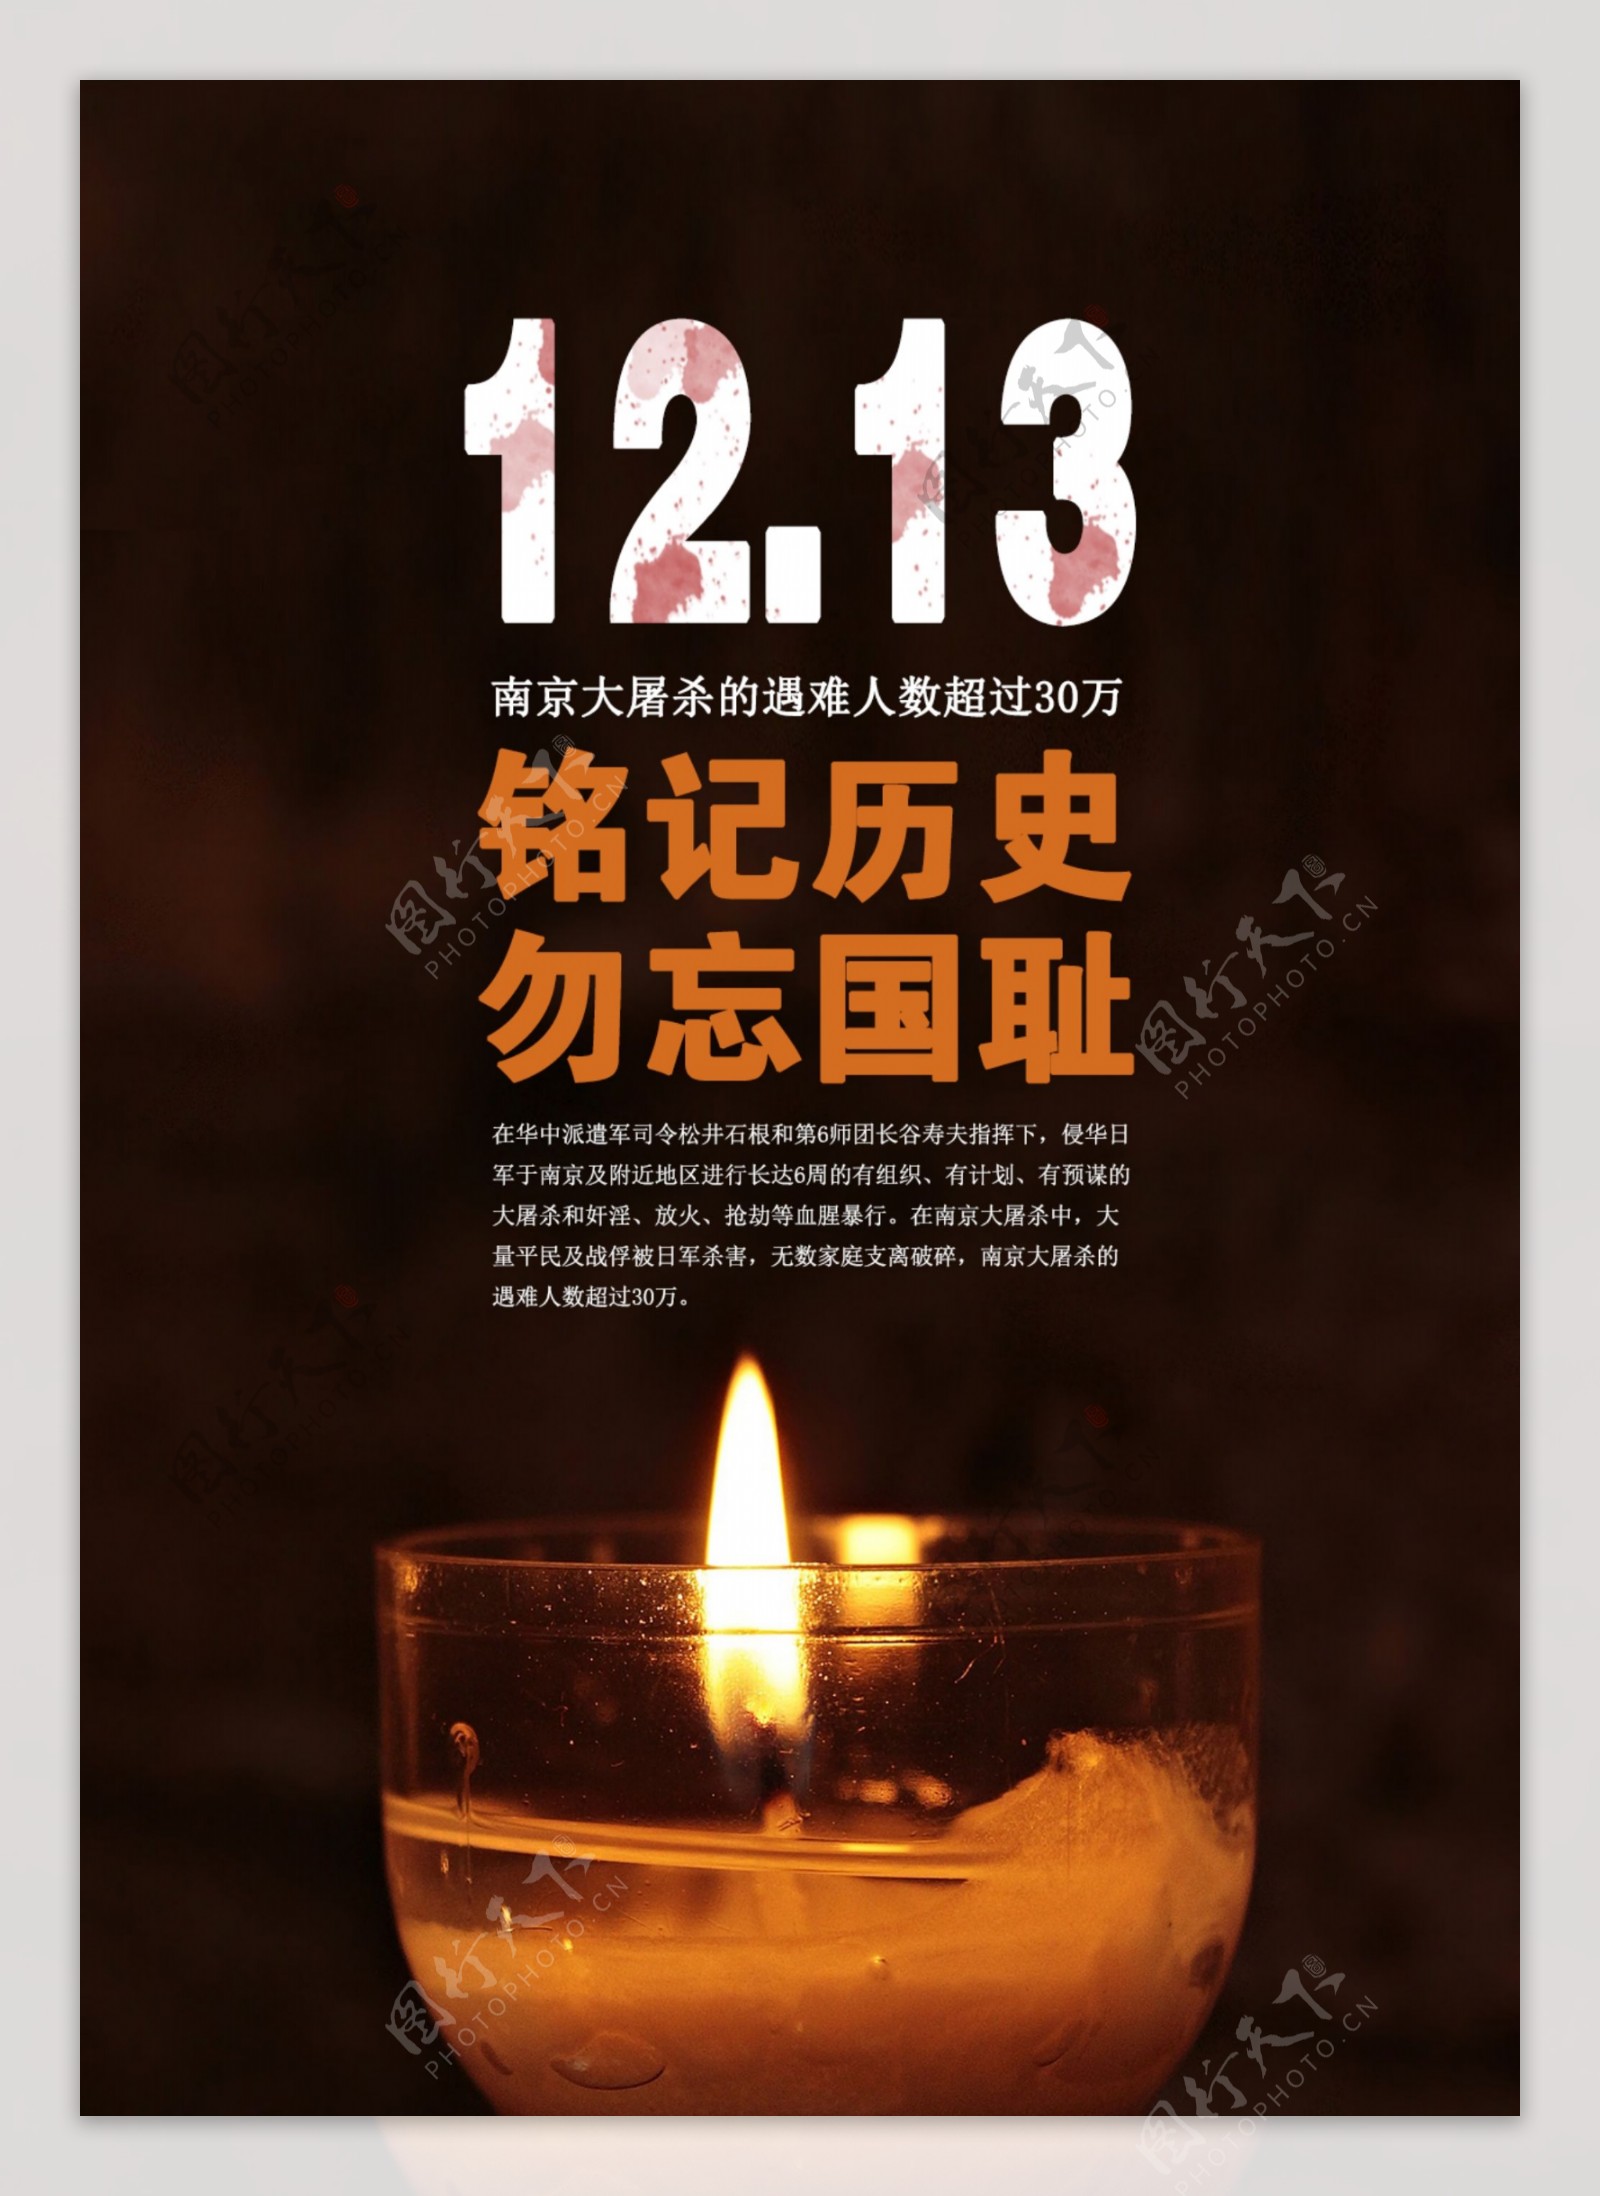 中国南京大屠杀纪念日国家公祭日12.13